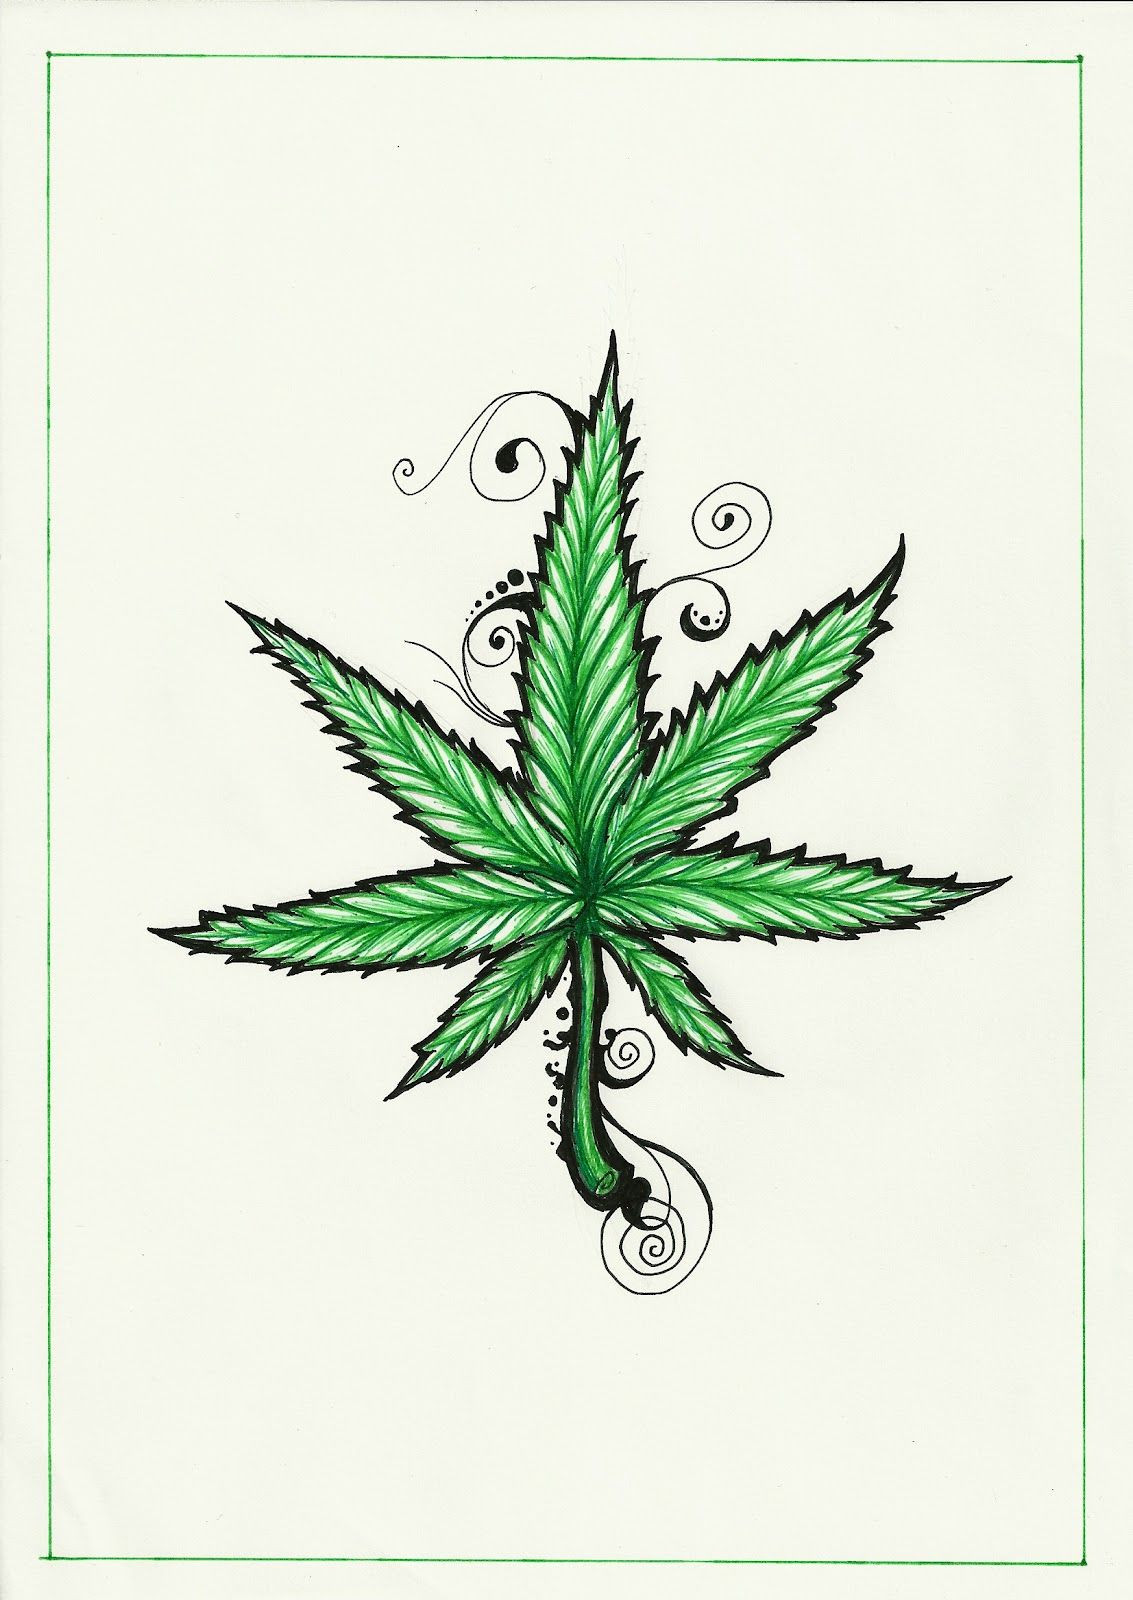 Luxury Marijuana Leaf Drawing - Easy Pot Leaf Drawing. 